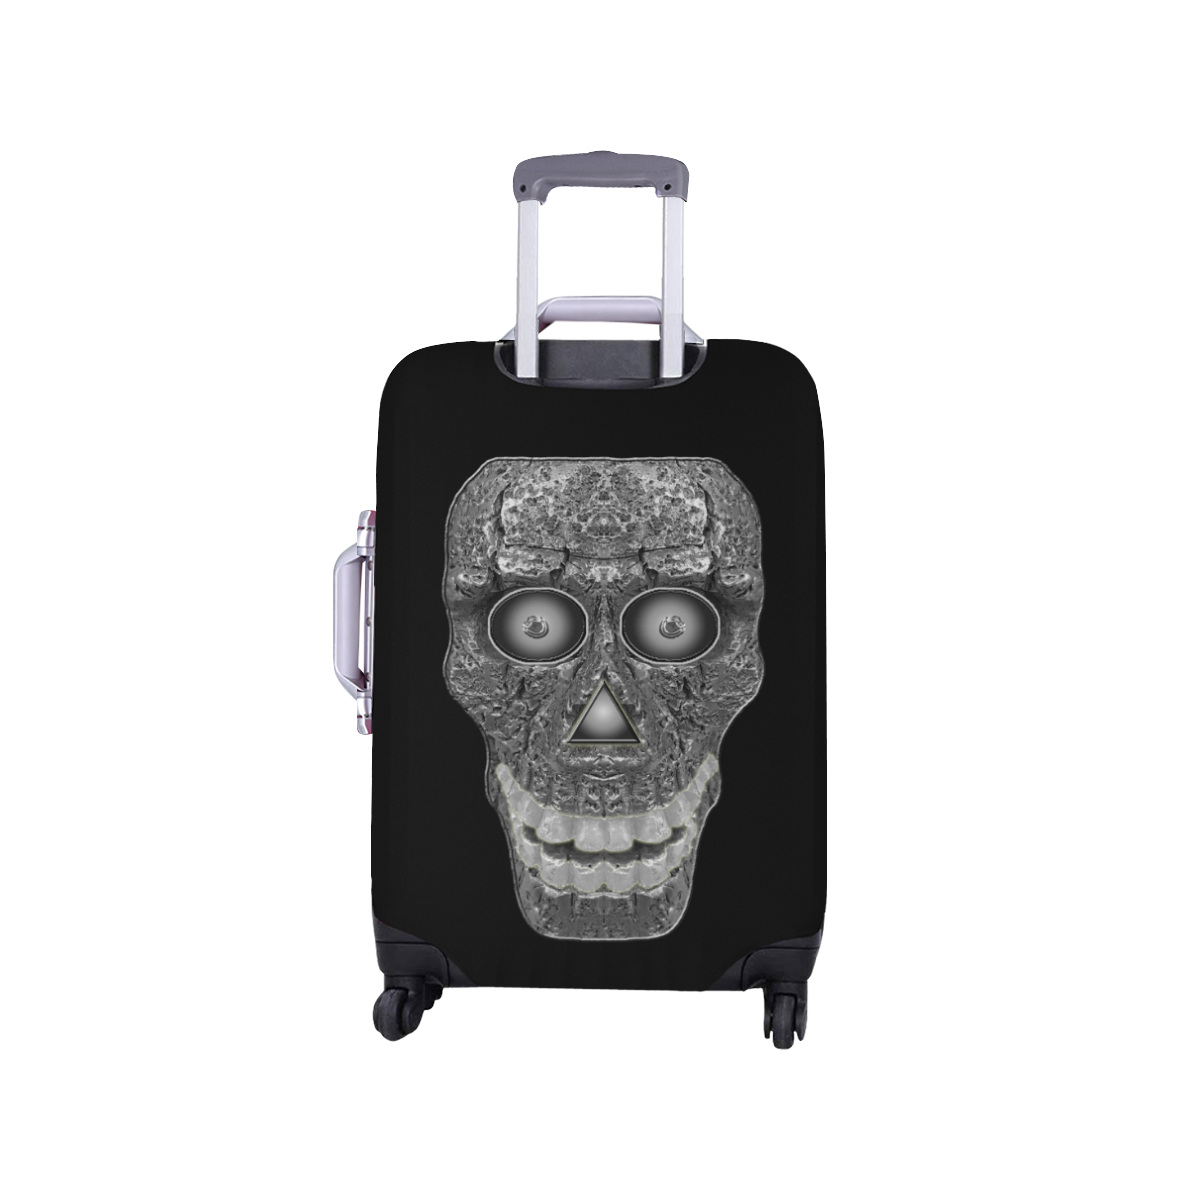 Cod Grey Skullhead Luggage Cover/Small 18"-21"